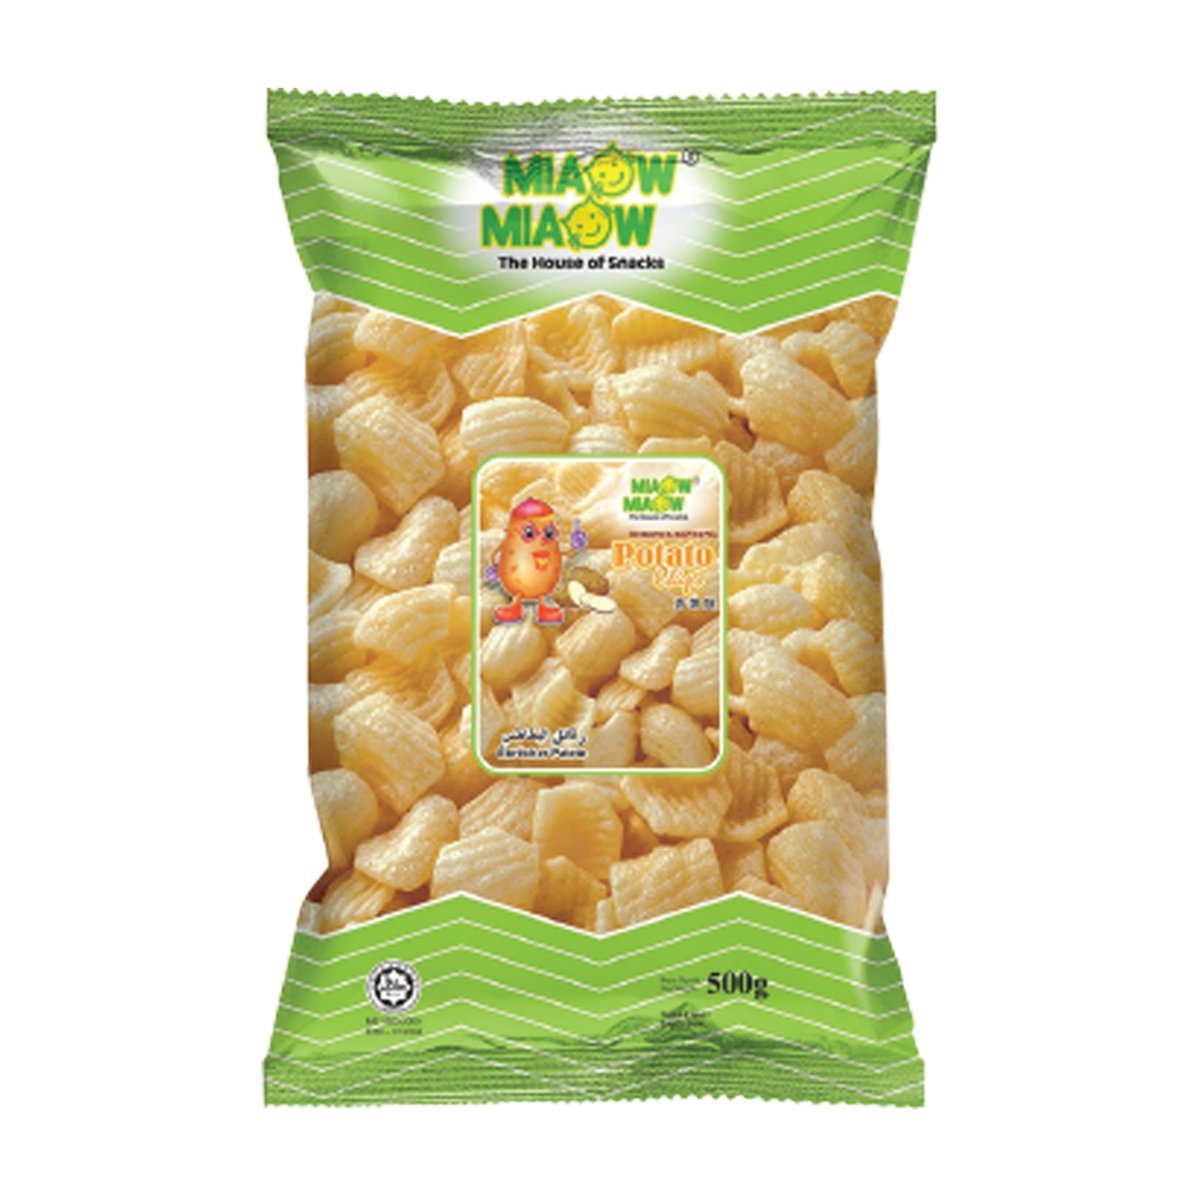 Miaow Miaow Potato Chips 450g